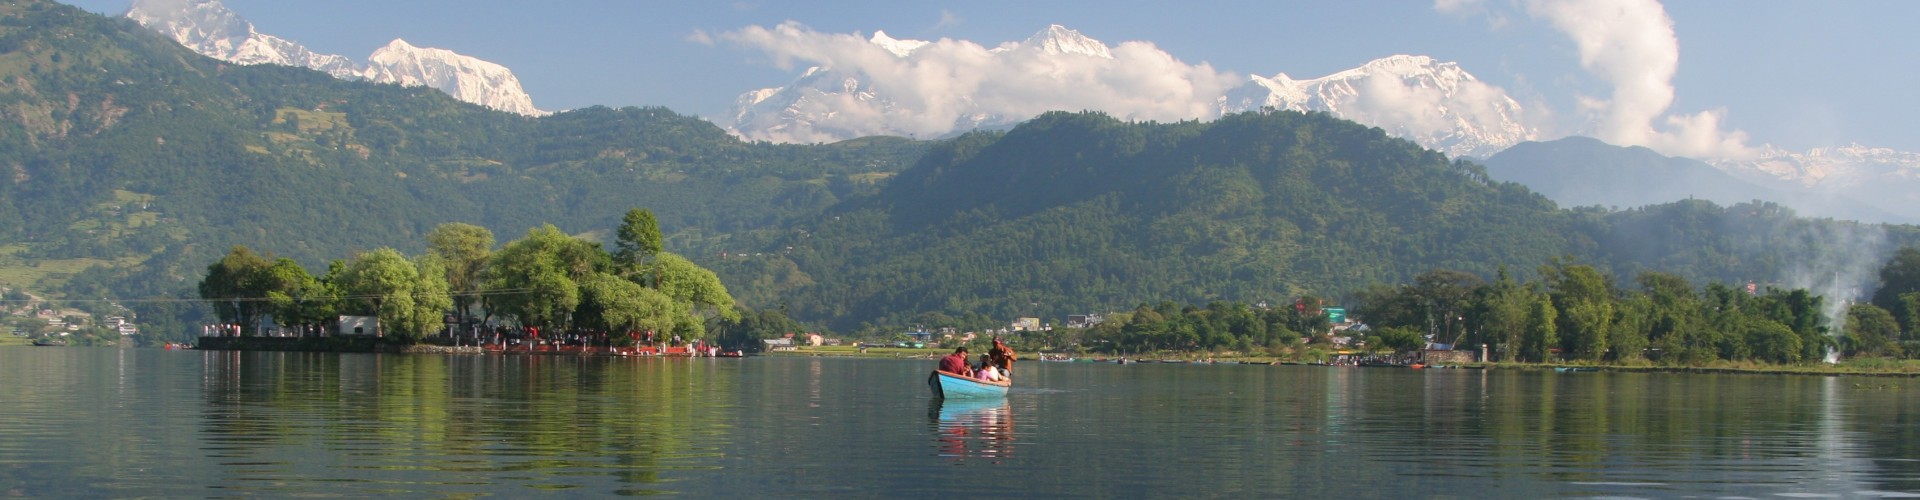 Phewa Lake, Nepal